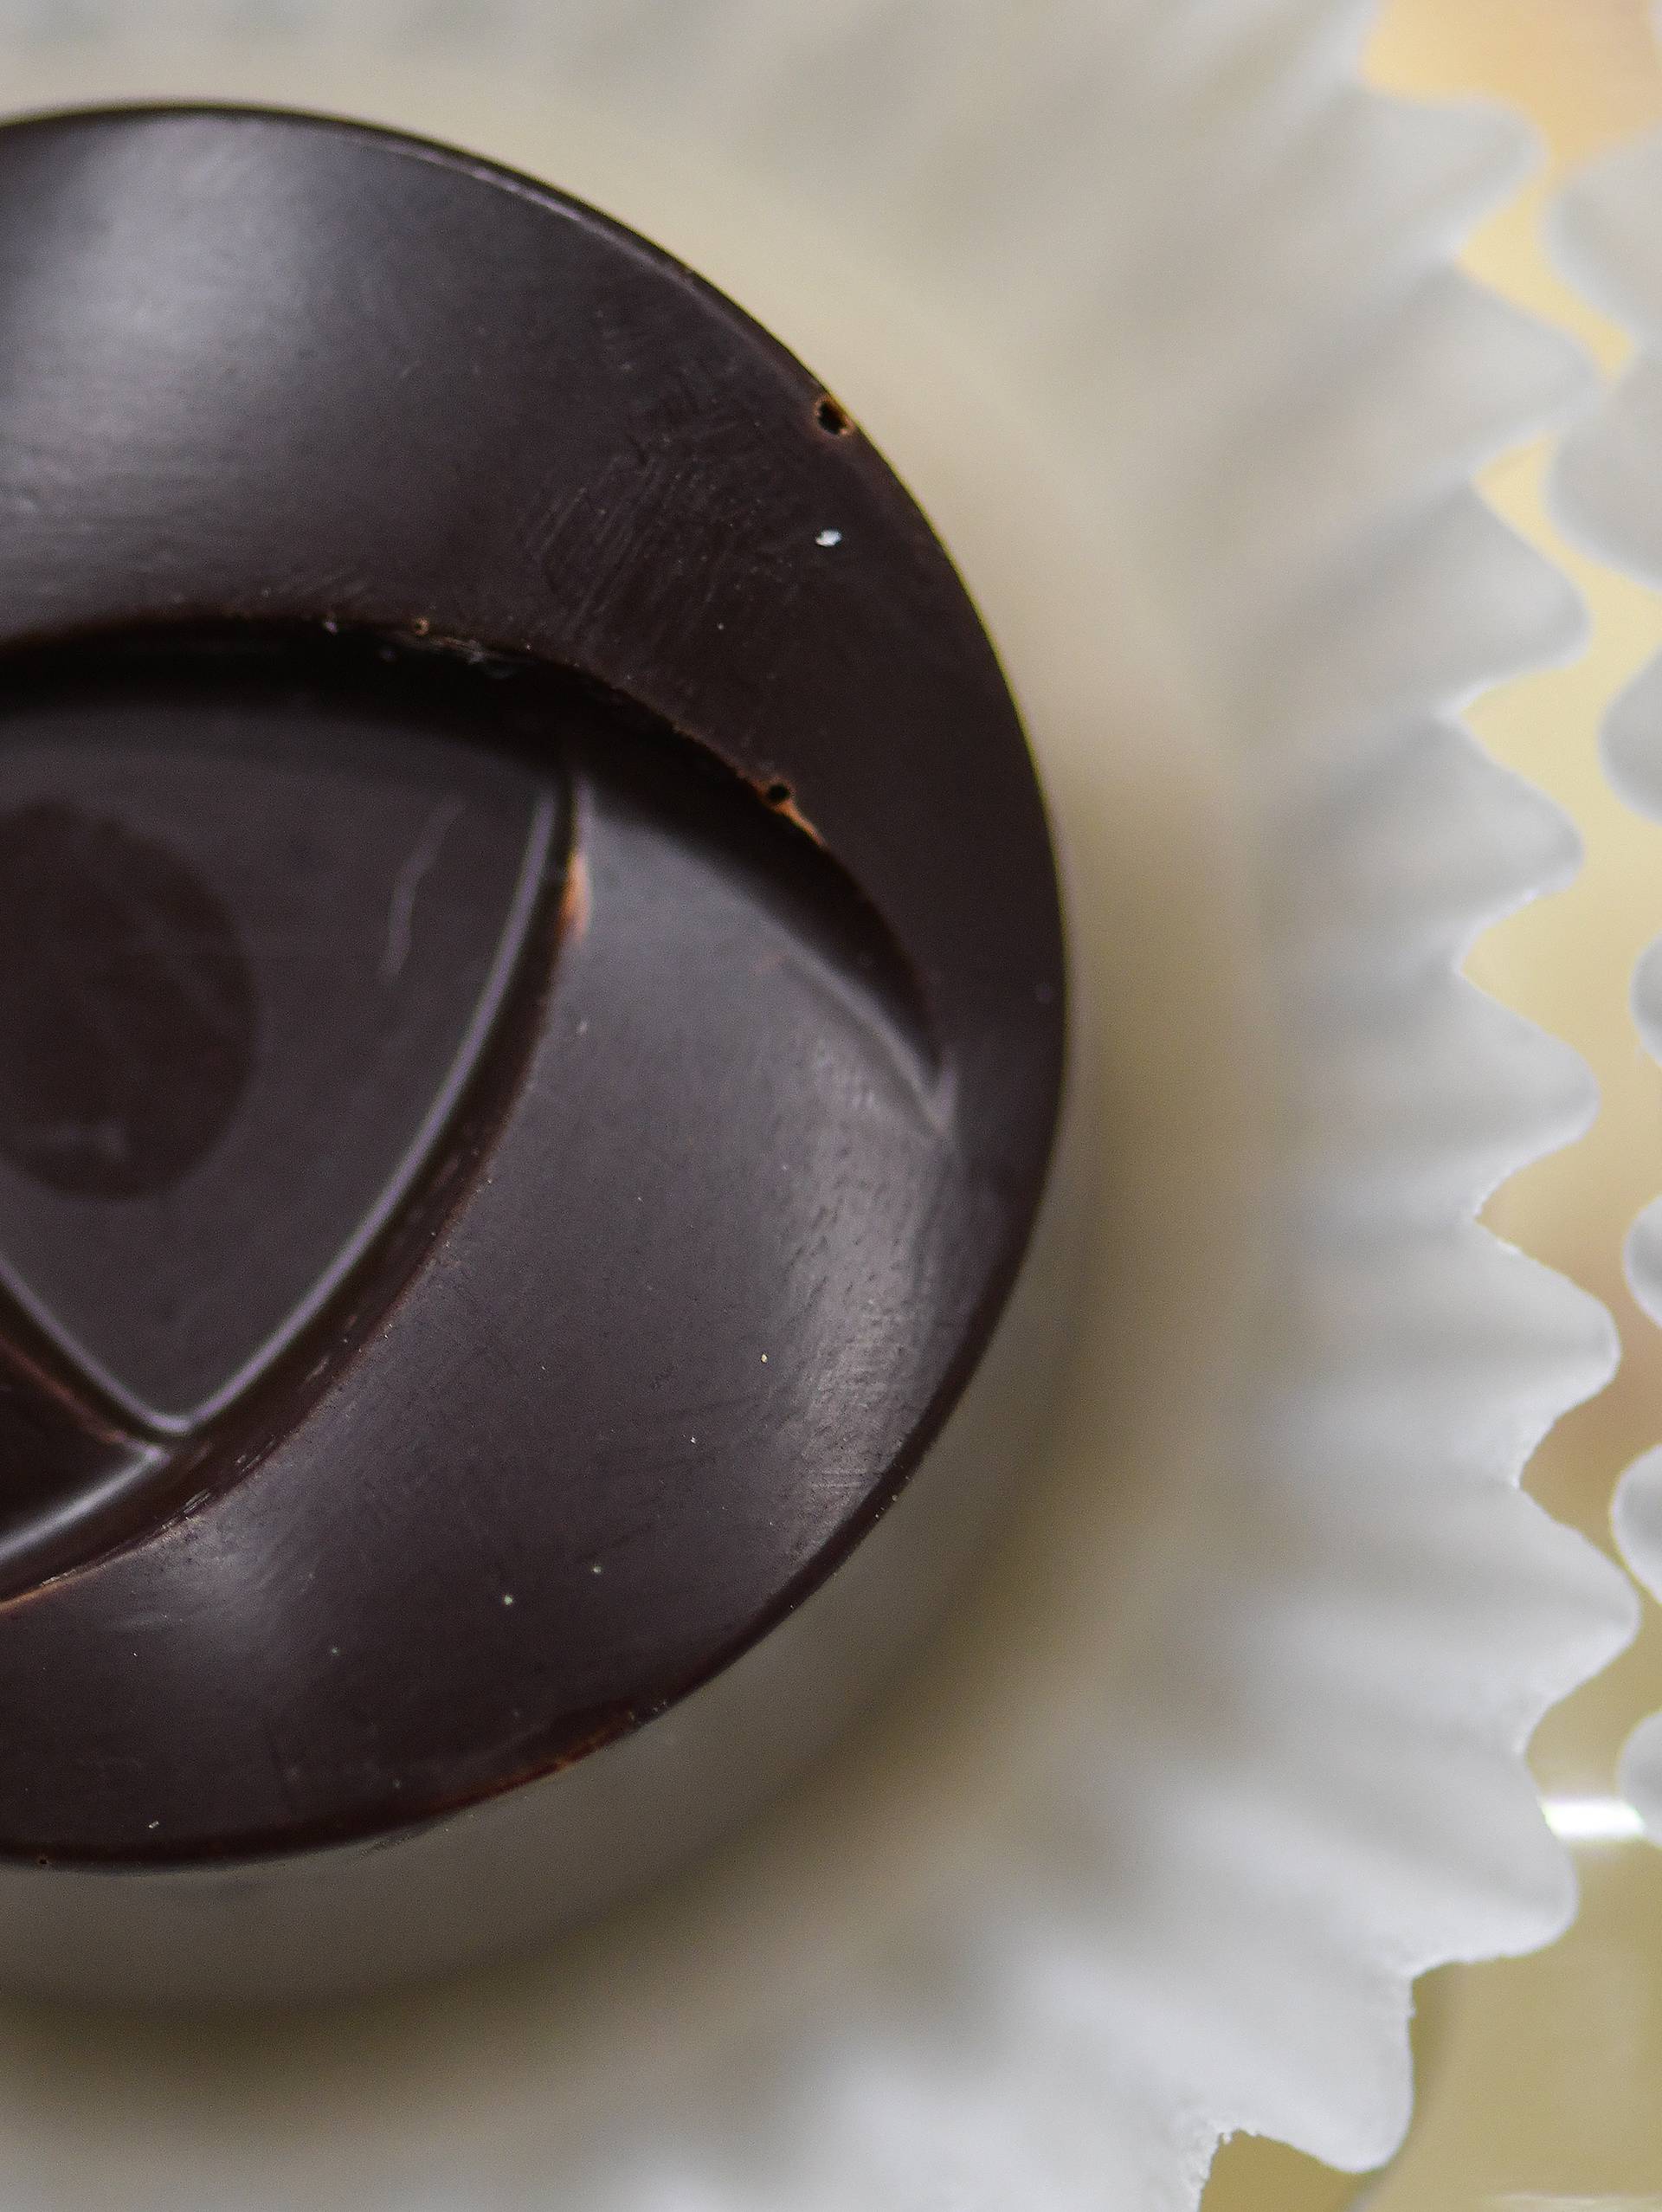 U Esplanadi se jede čokolada koju rade ljudi s invaliditetom